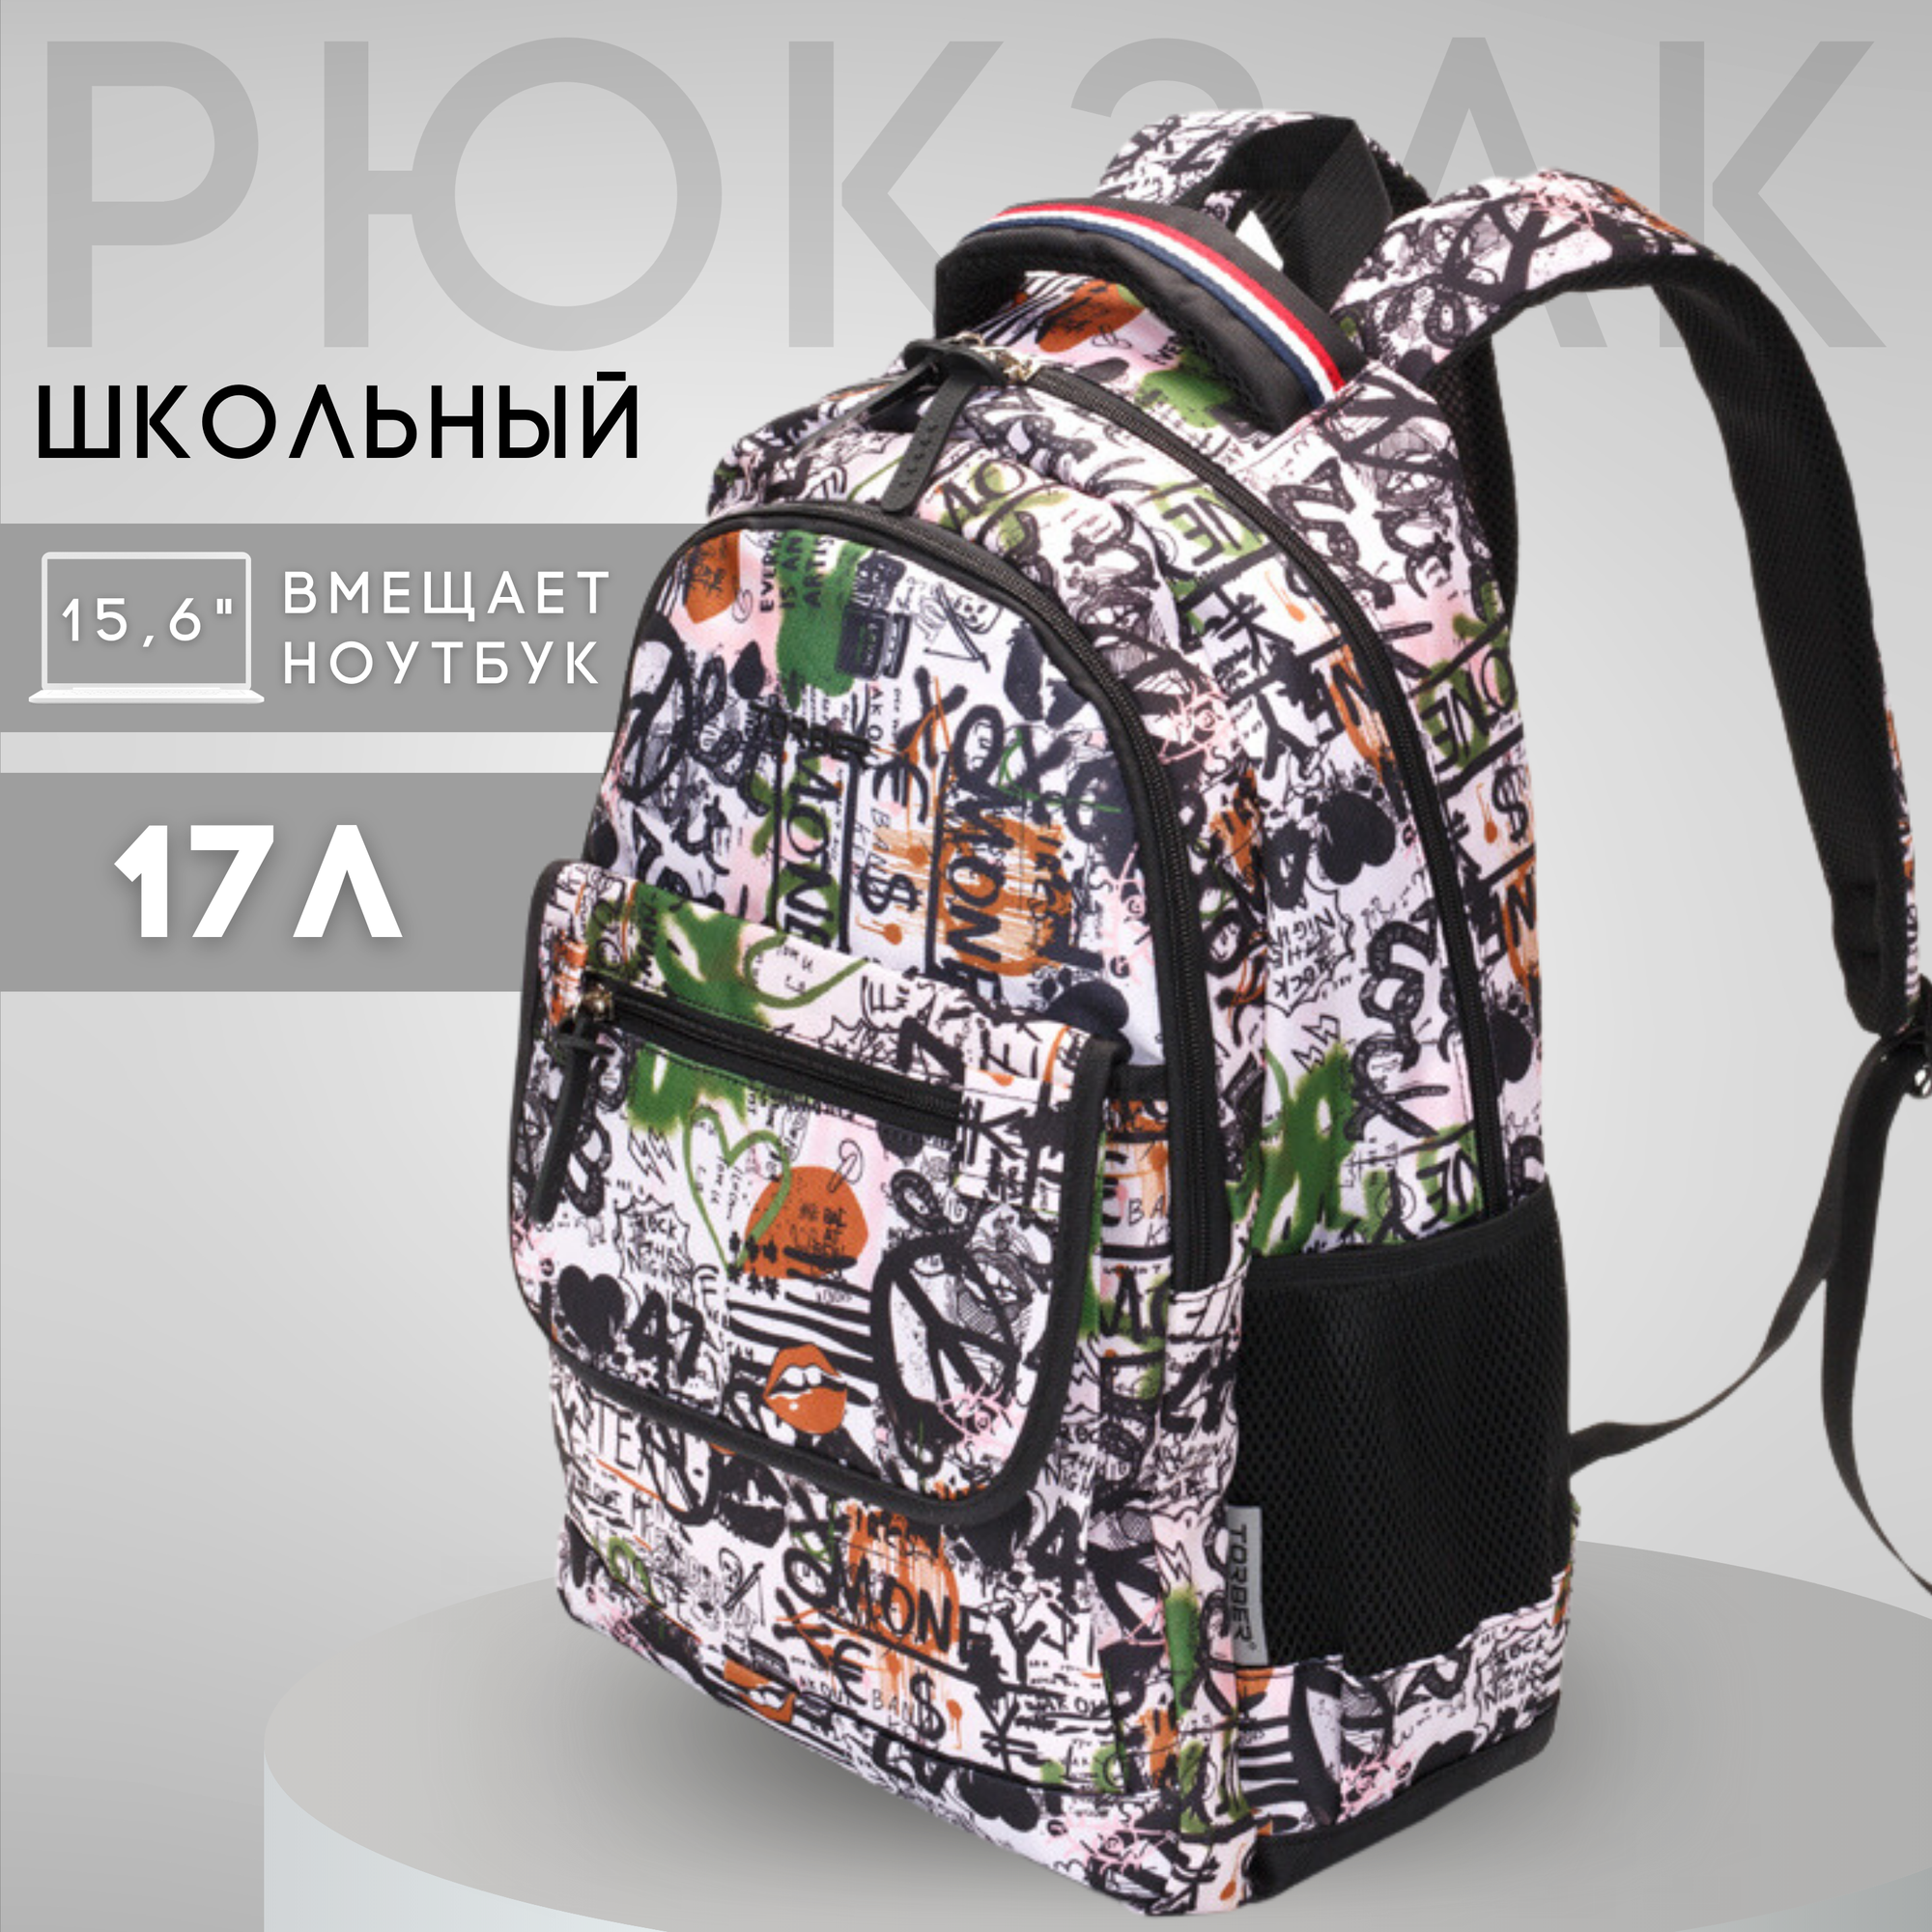 Школьный рюкзак для мальчика, для девочки TORBER CLASS X, черно-белый с рисунком, полиэстер, 45х30х18 см, 17 л (T2743-WHI-BLK)